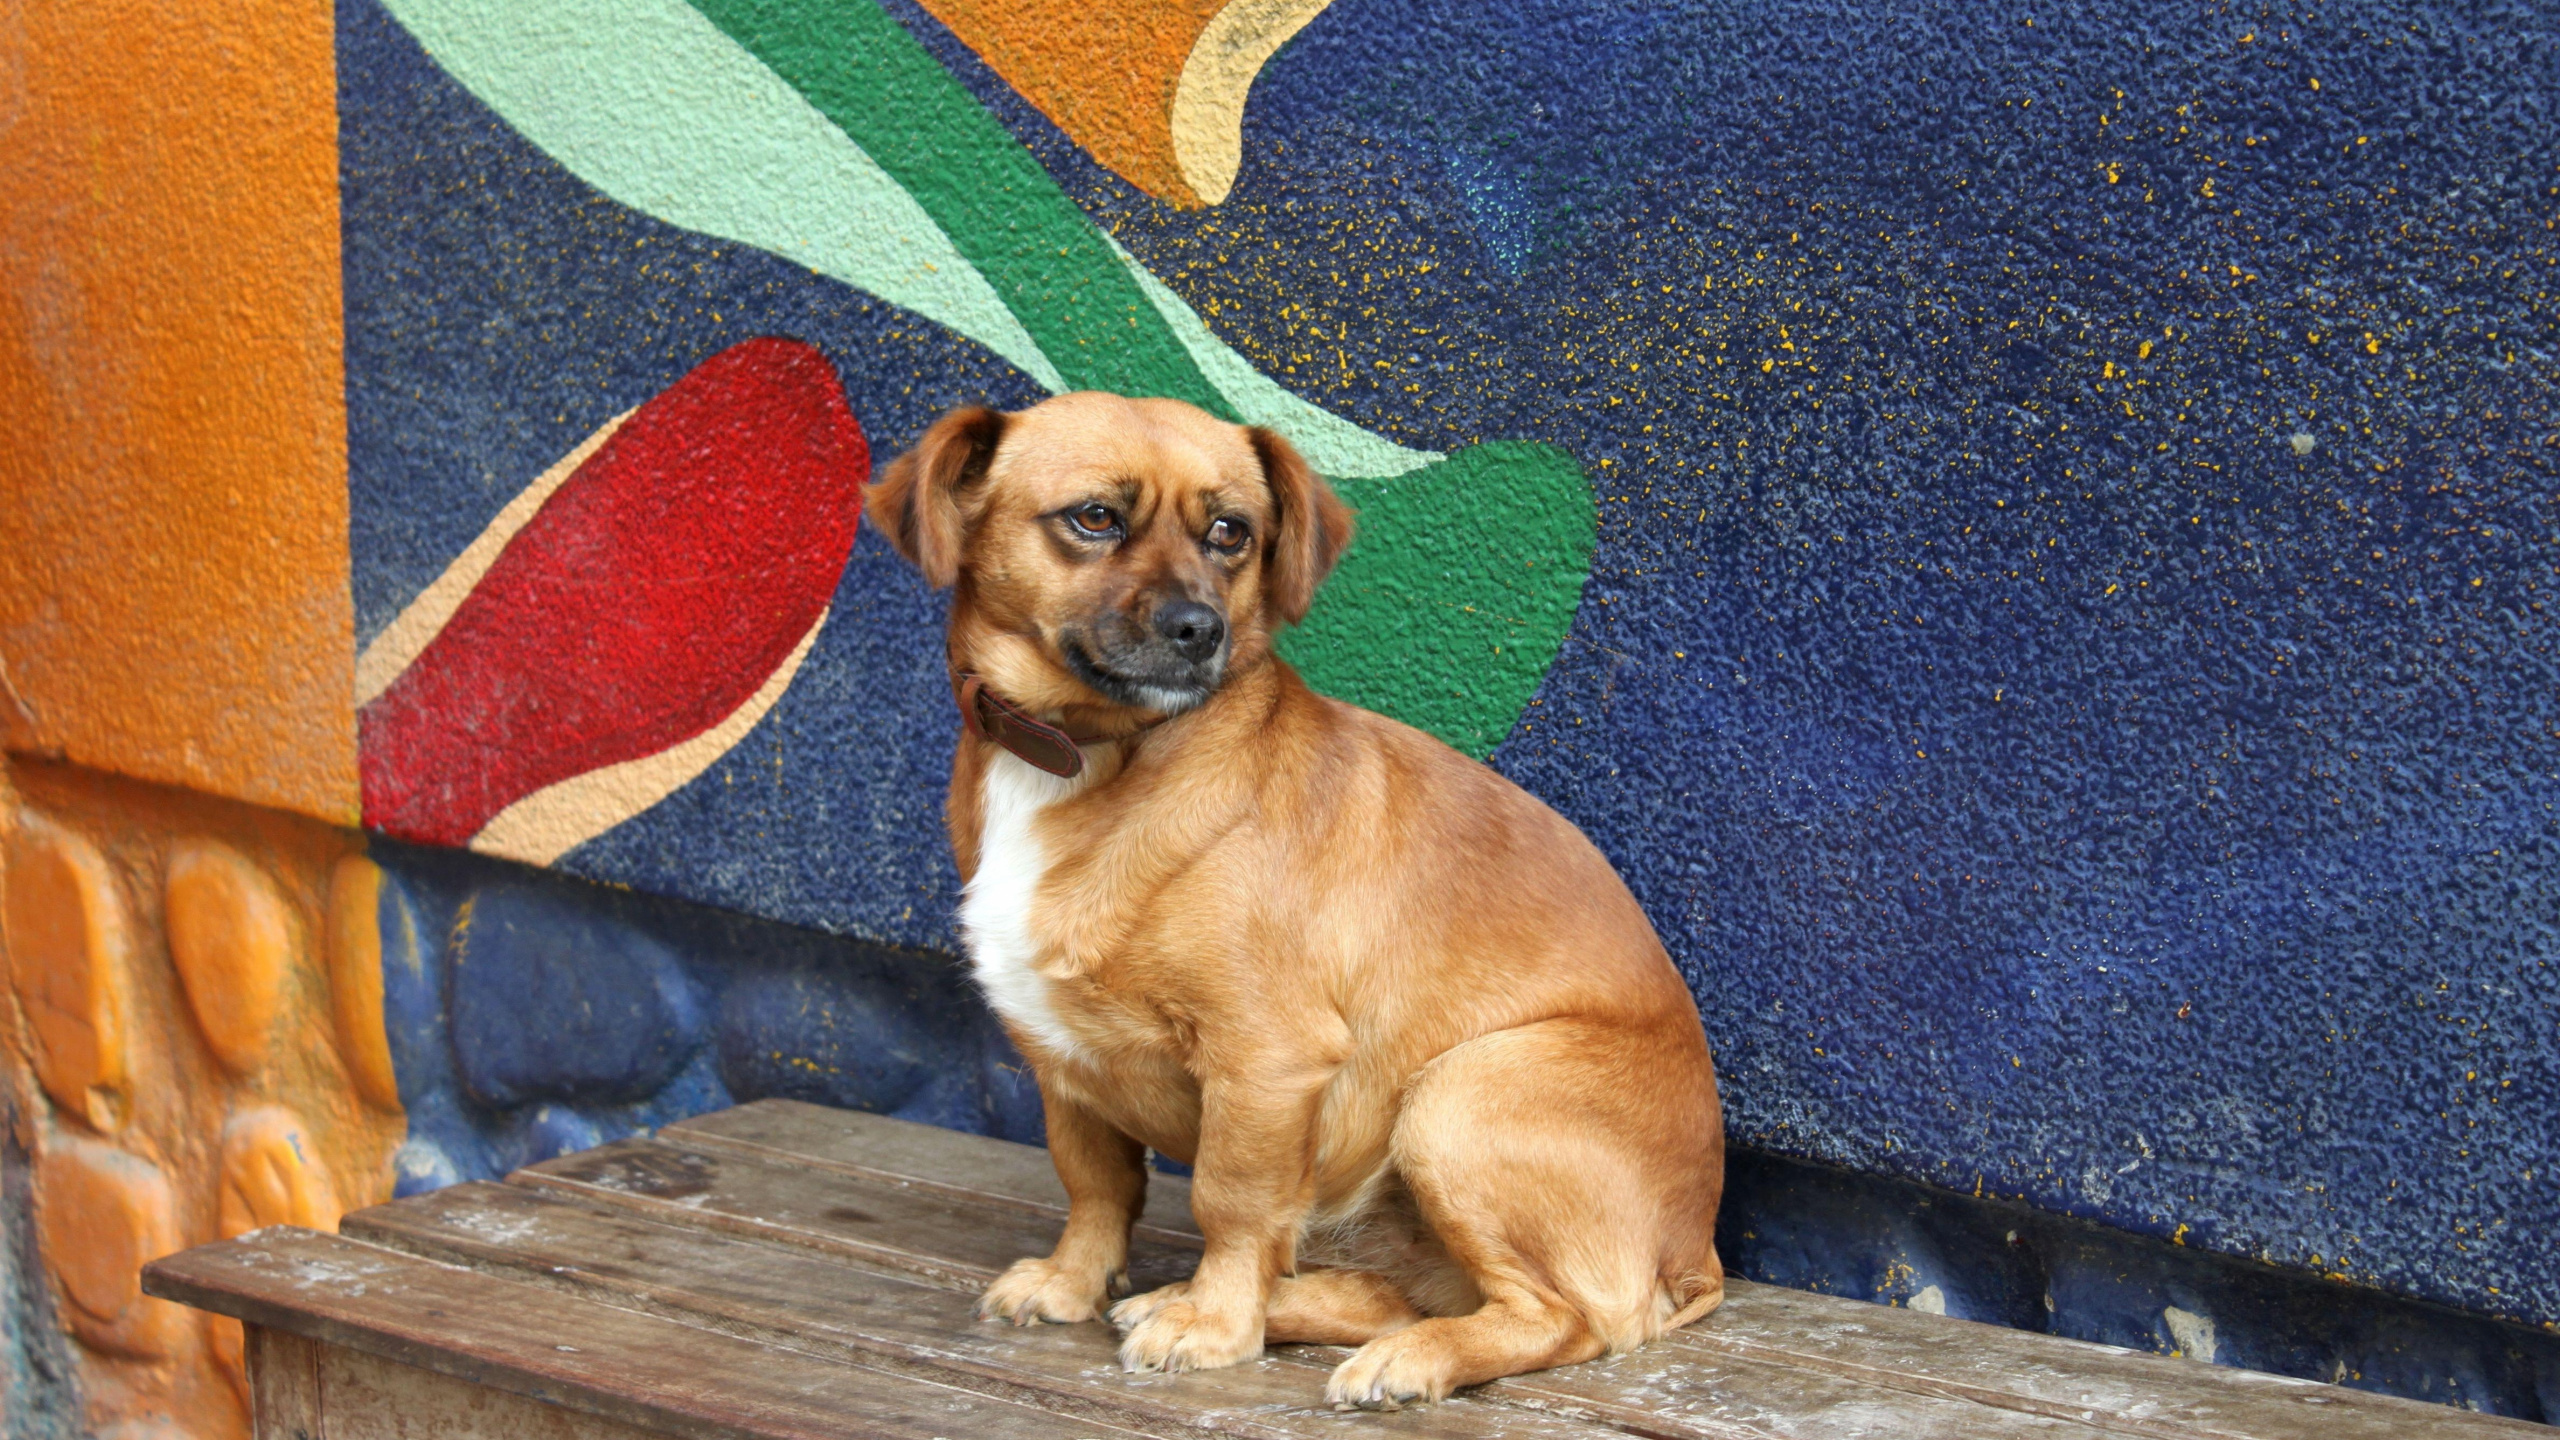 小狗, 役脆, 甘蔗corso, 品种的狗, 伴侣的狗 壁纸 2560x1440 允许